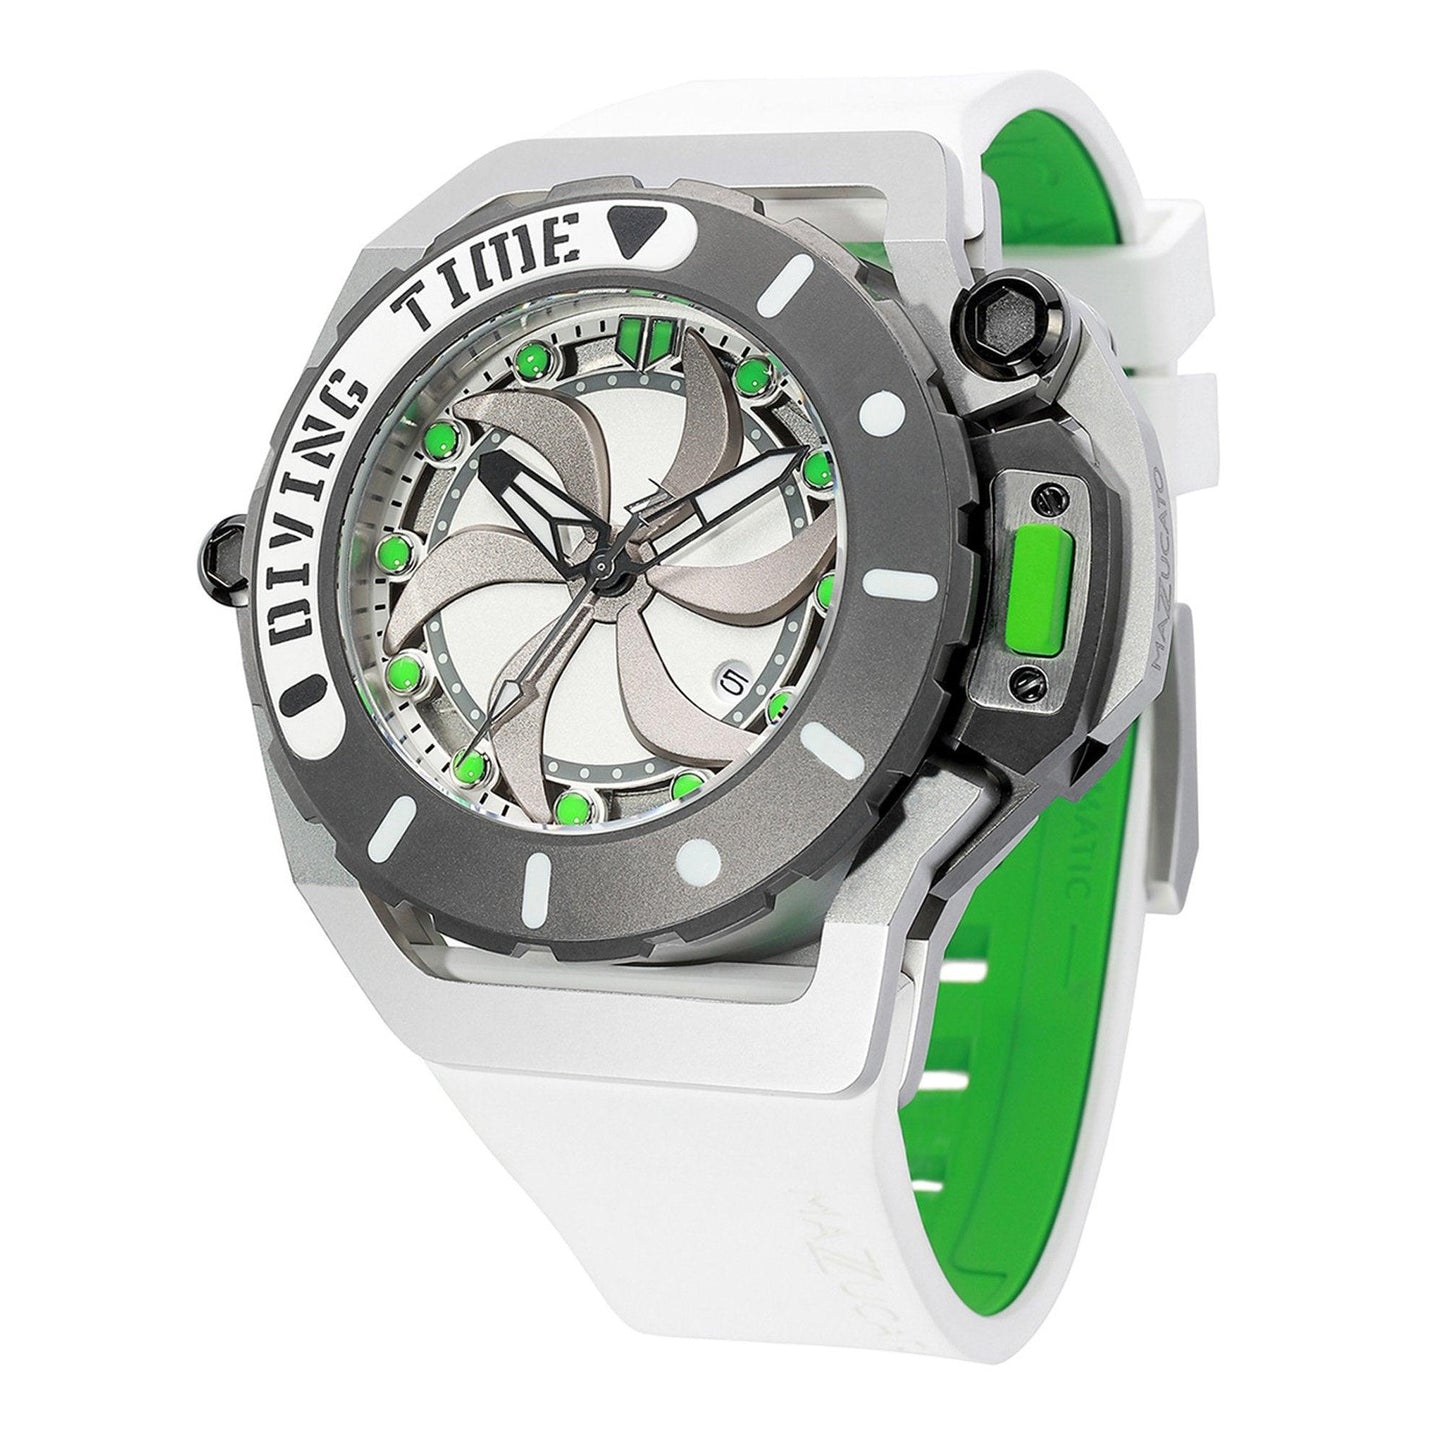 Mazzucato RIM SCUBA SUB07-WH802 orologio uomo meccanico - Kechiq Concept Boutique